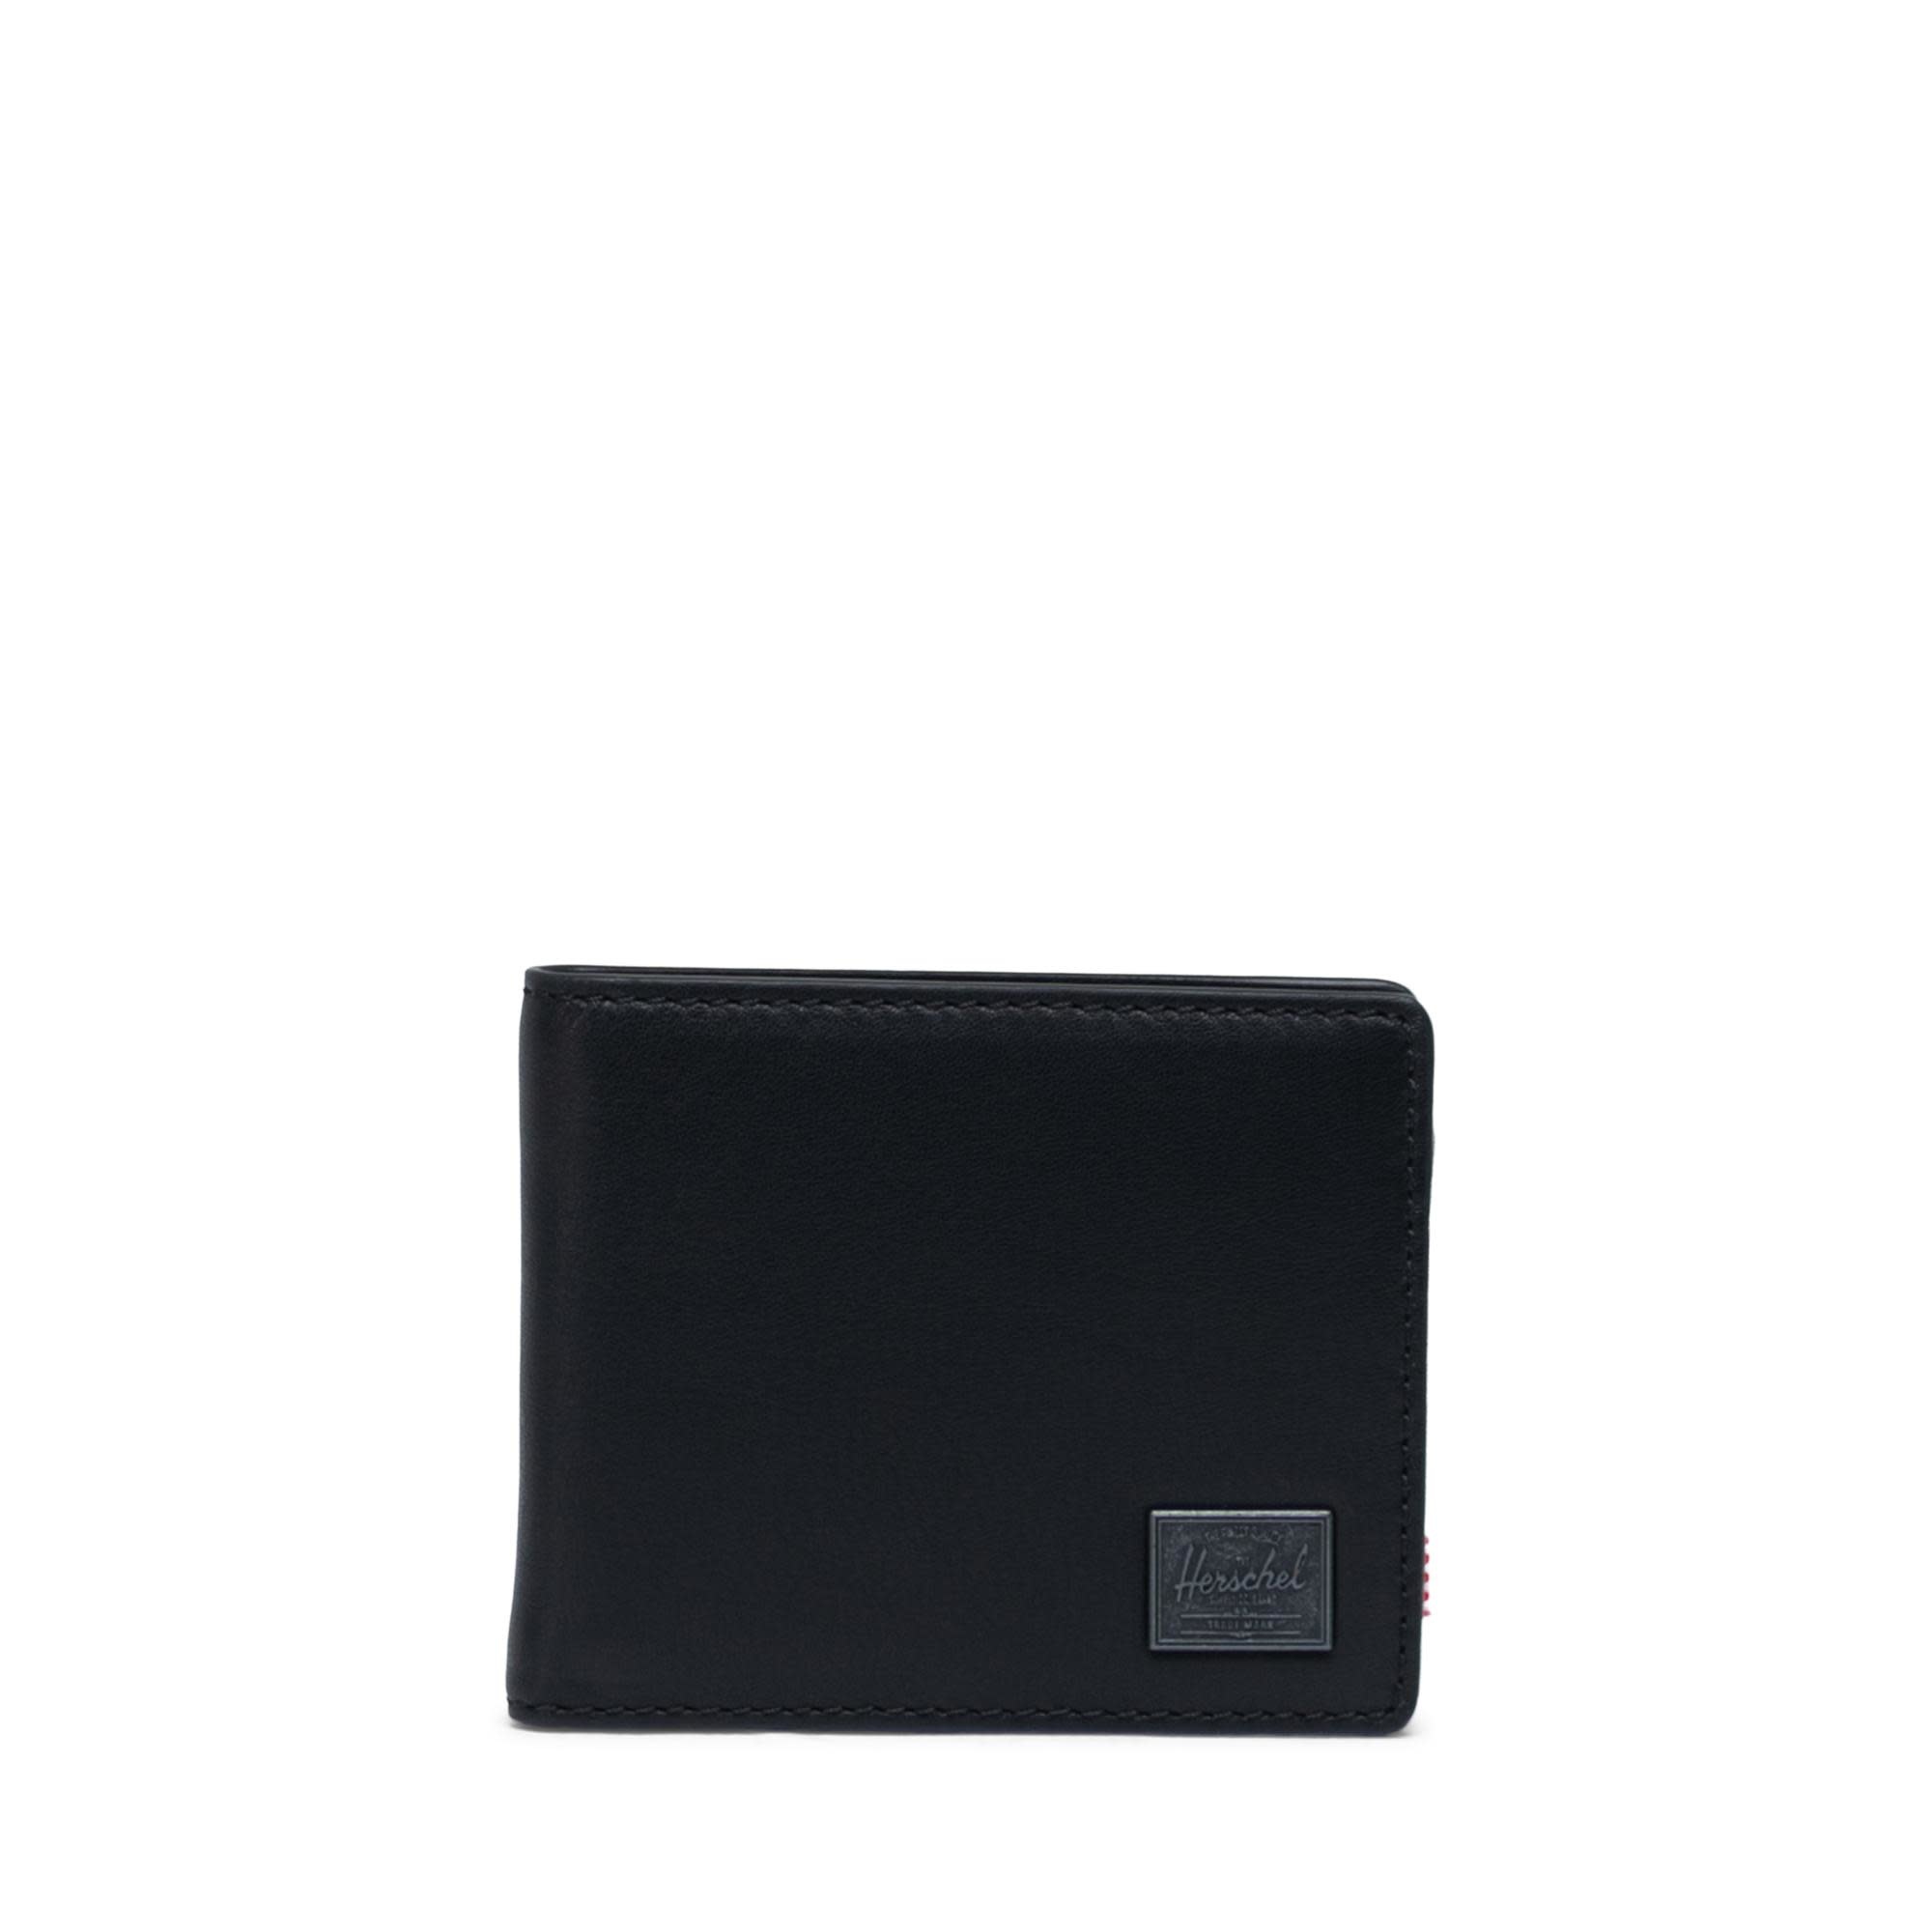 Herschel Supply Co. Herschel Hank Leather Wallet - Black/RFID